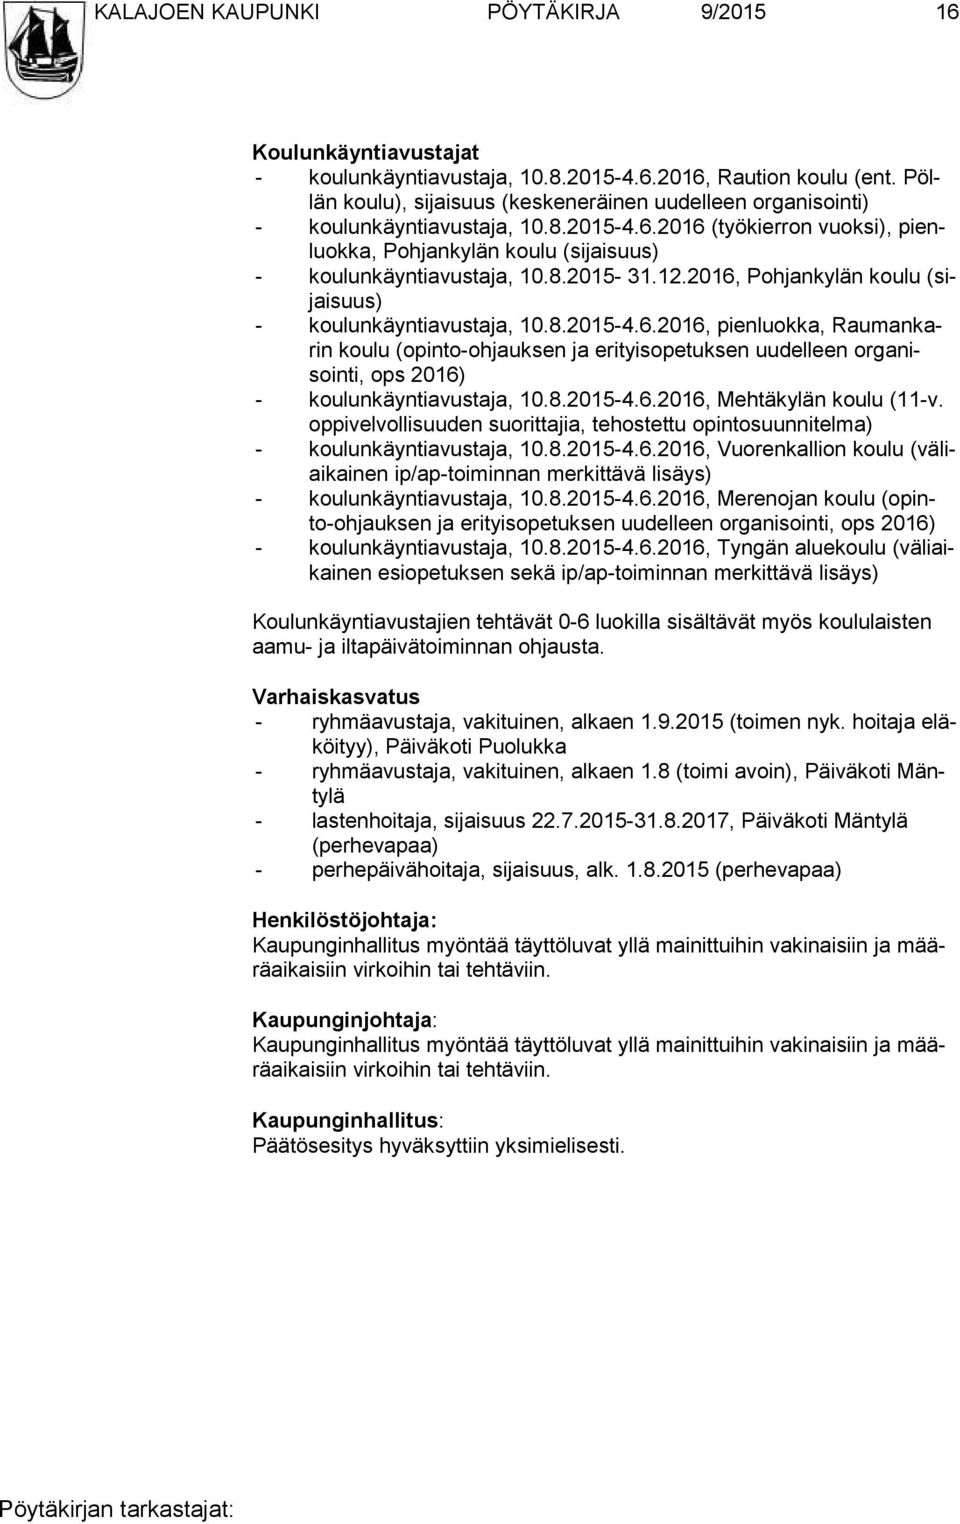 12.2016, Pohjankylän koulu (sijai suus) - koulunkäyntiavustaja, 10.8.2015-4.6.2016, pienluokka, Rau man karin koulu (opinto-ohjauksen ja erityisopetuksen uudelleen or ga nisoin ti, ops 2016) - koulunkäyntiavustaja, 10.